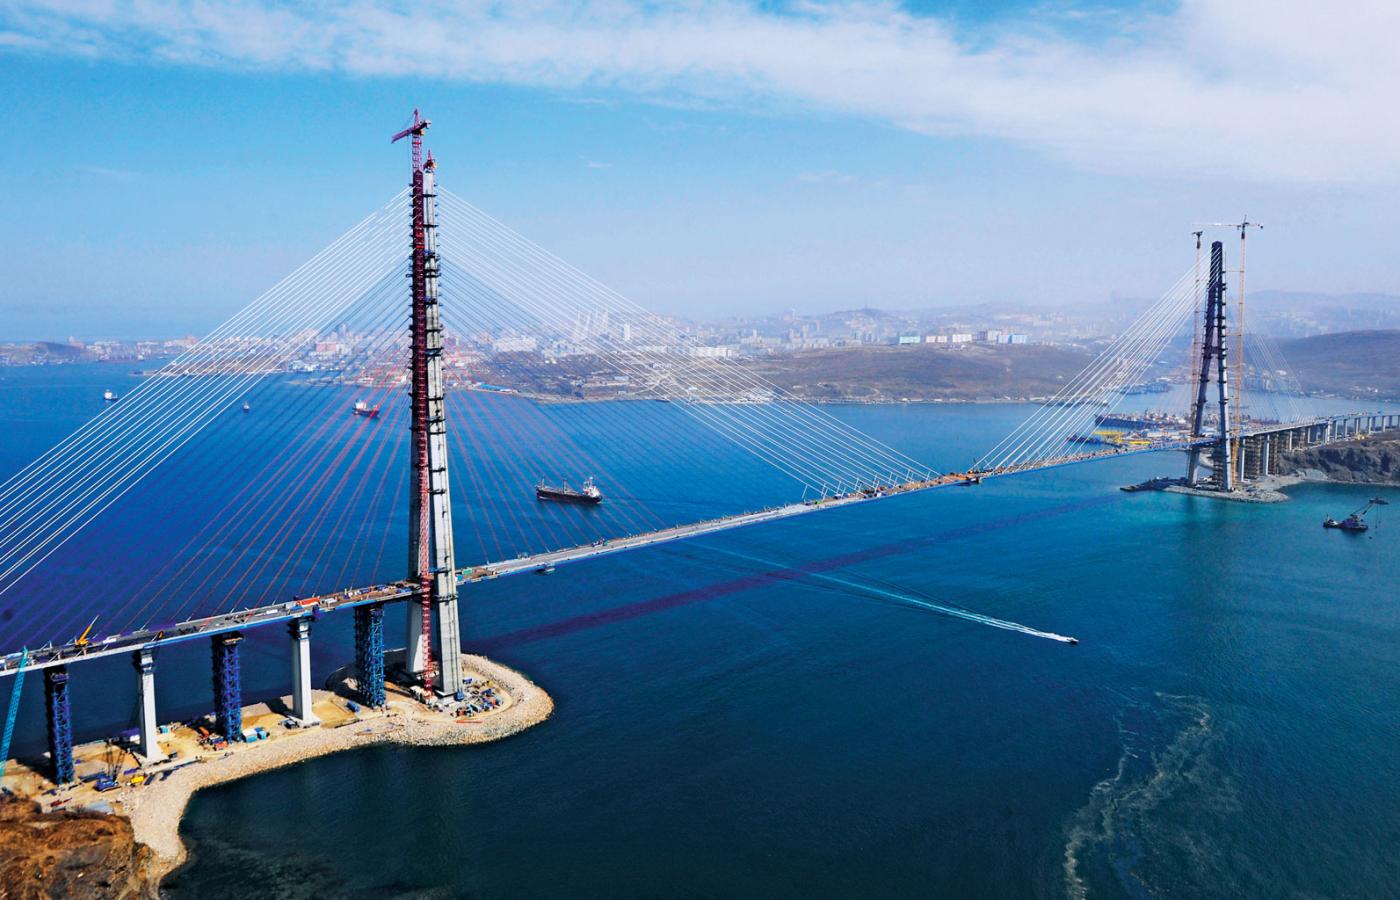 Najdłuższy most podwieszany na świecie łączy Władywostok z wyspą Russkij.